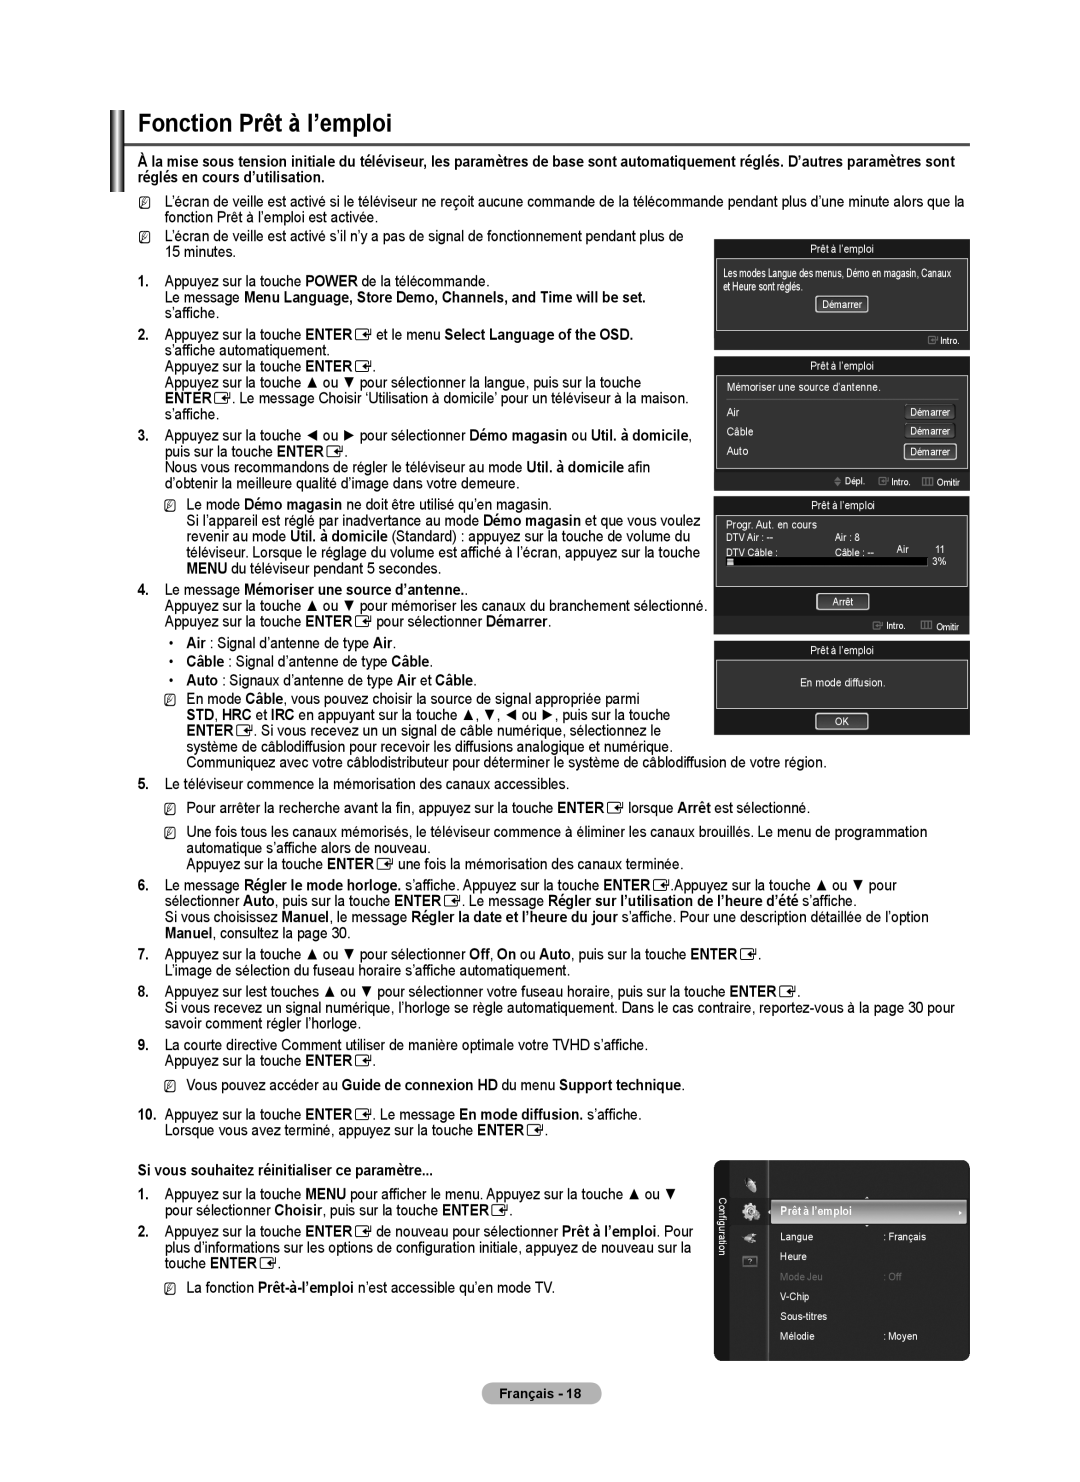 Samsung BN68-02426A-00 Fonction Prêt à l’emploi, Appuyez sur la touche ENTERE et le menu Select Language of the OSD 